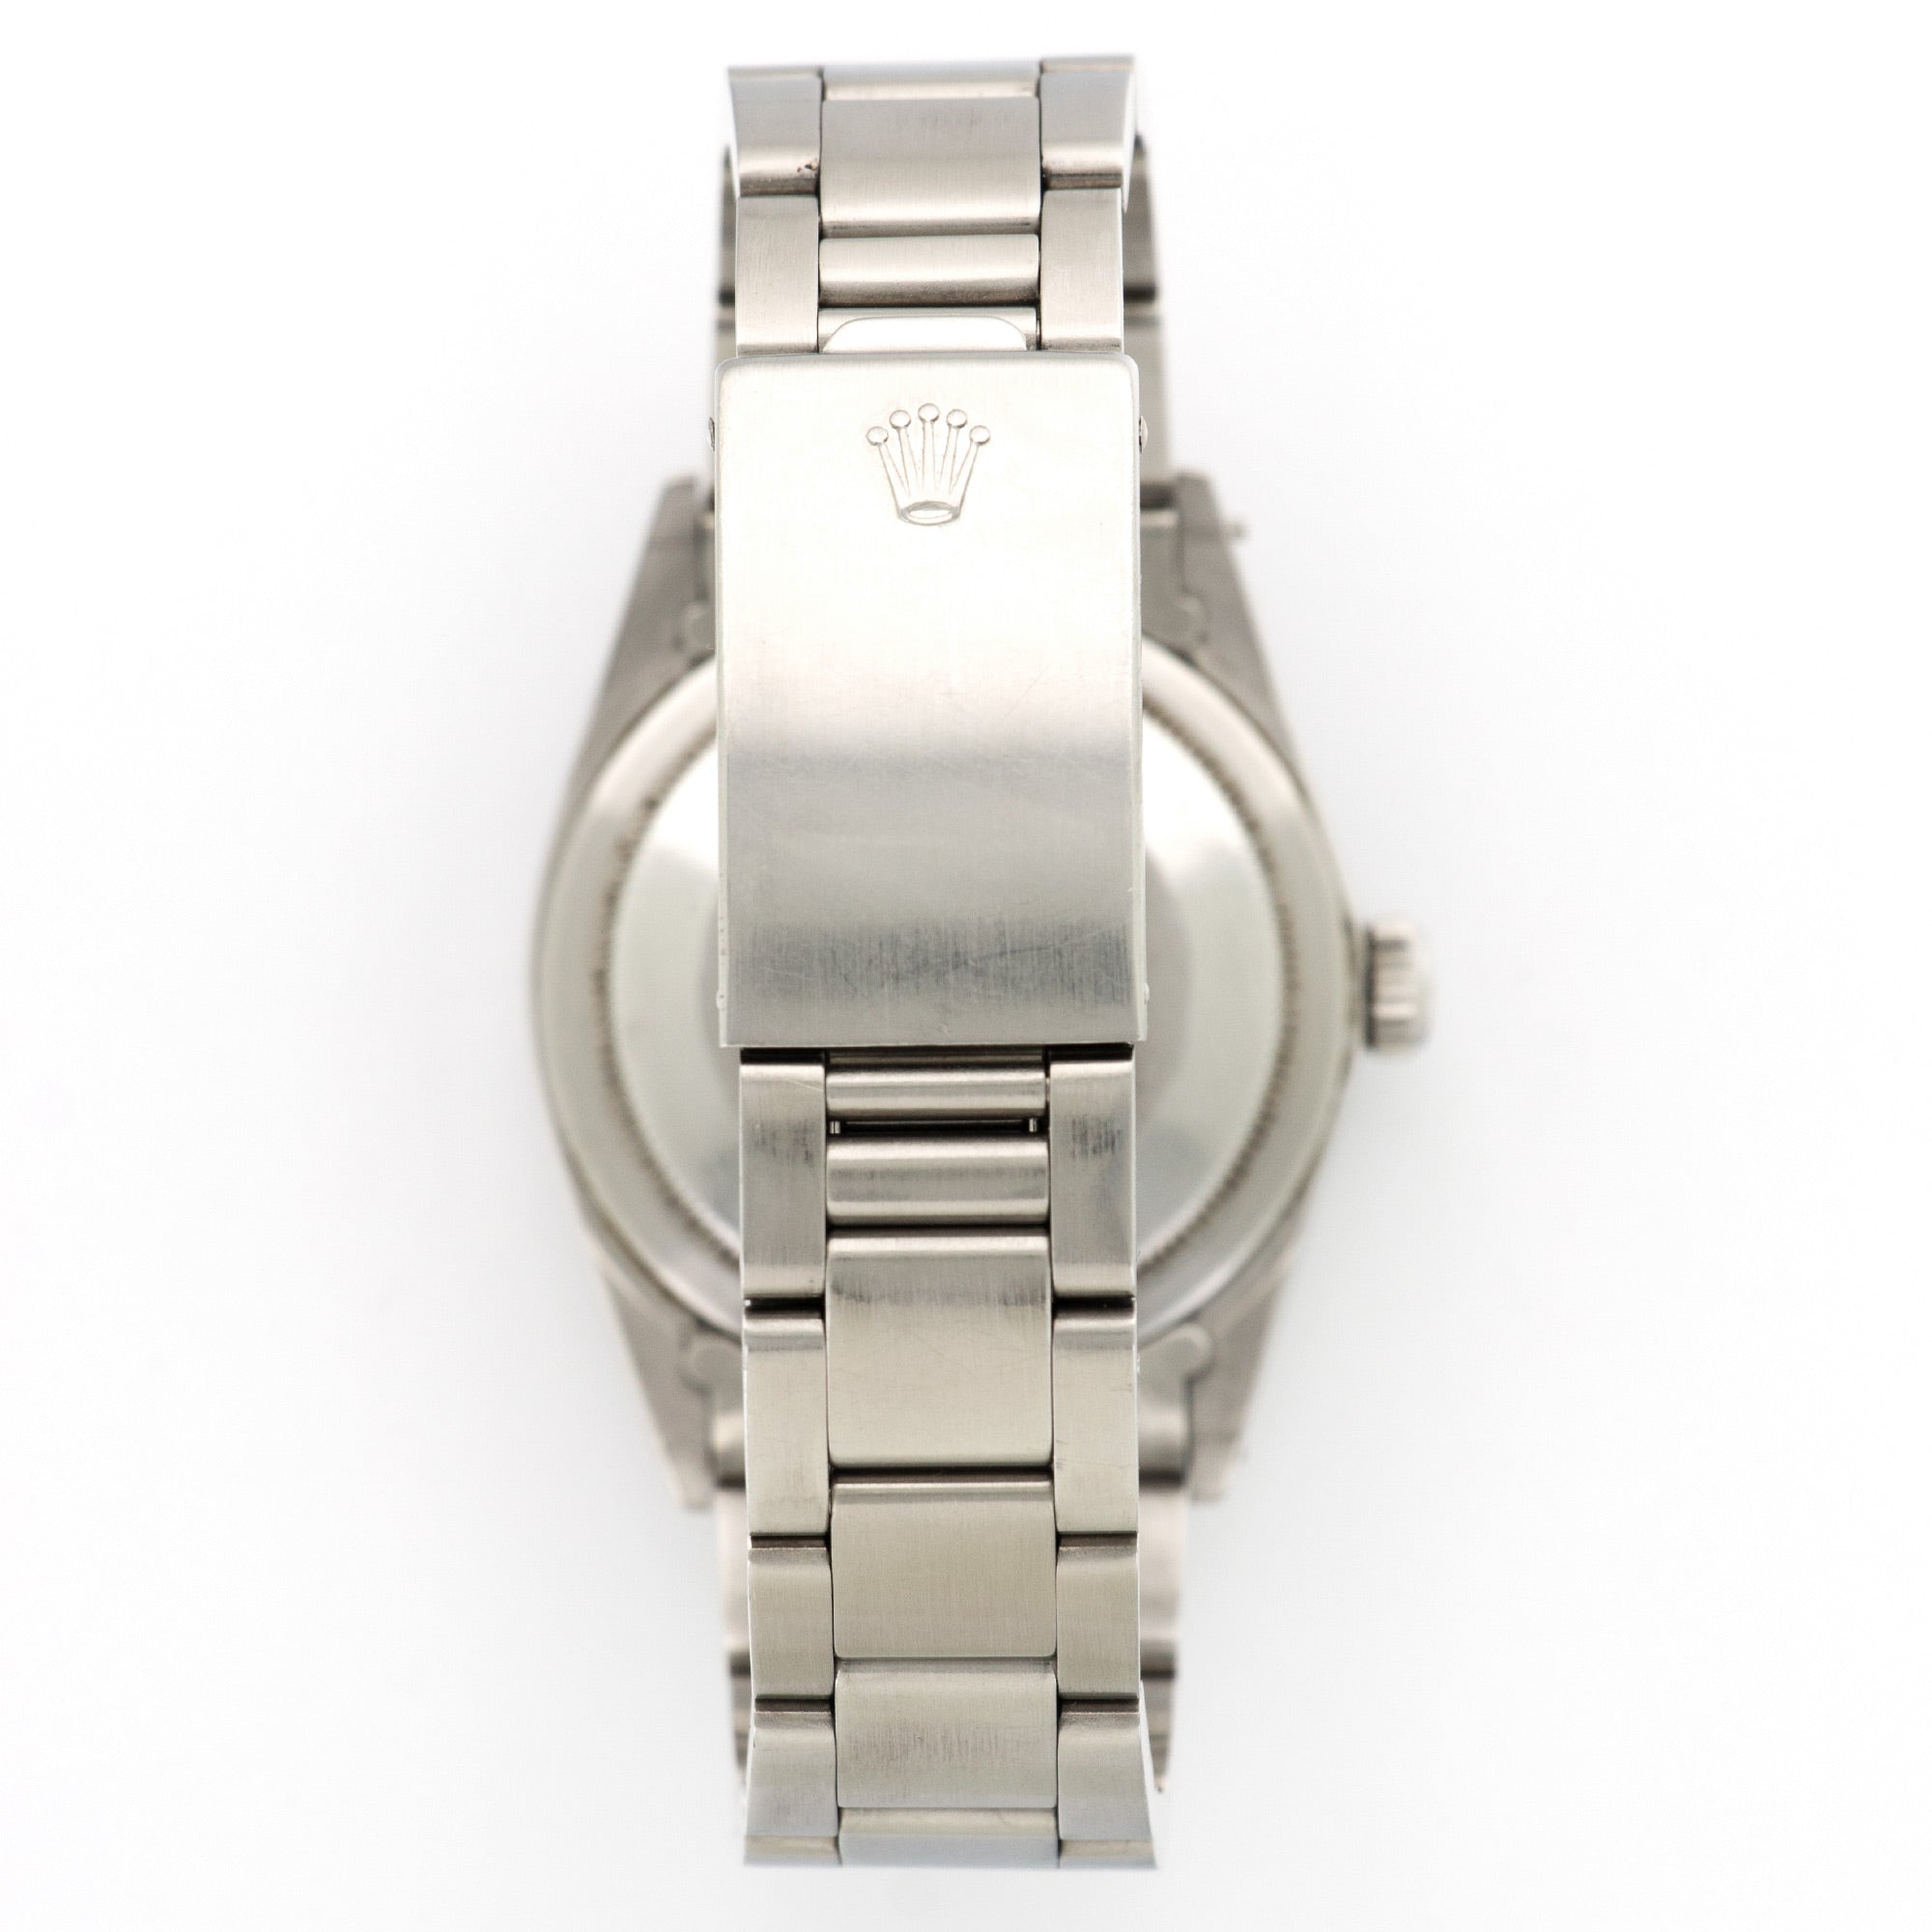 Rolex - Rolex R Series Explorer Stainless Steel Ref. 1016 - The Keystone Watches